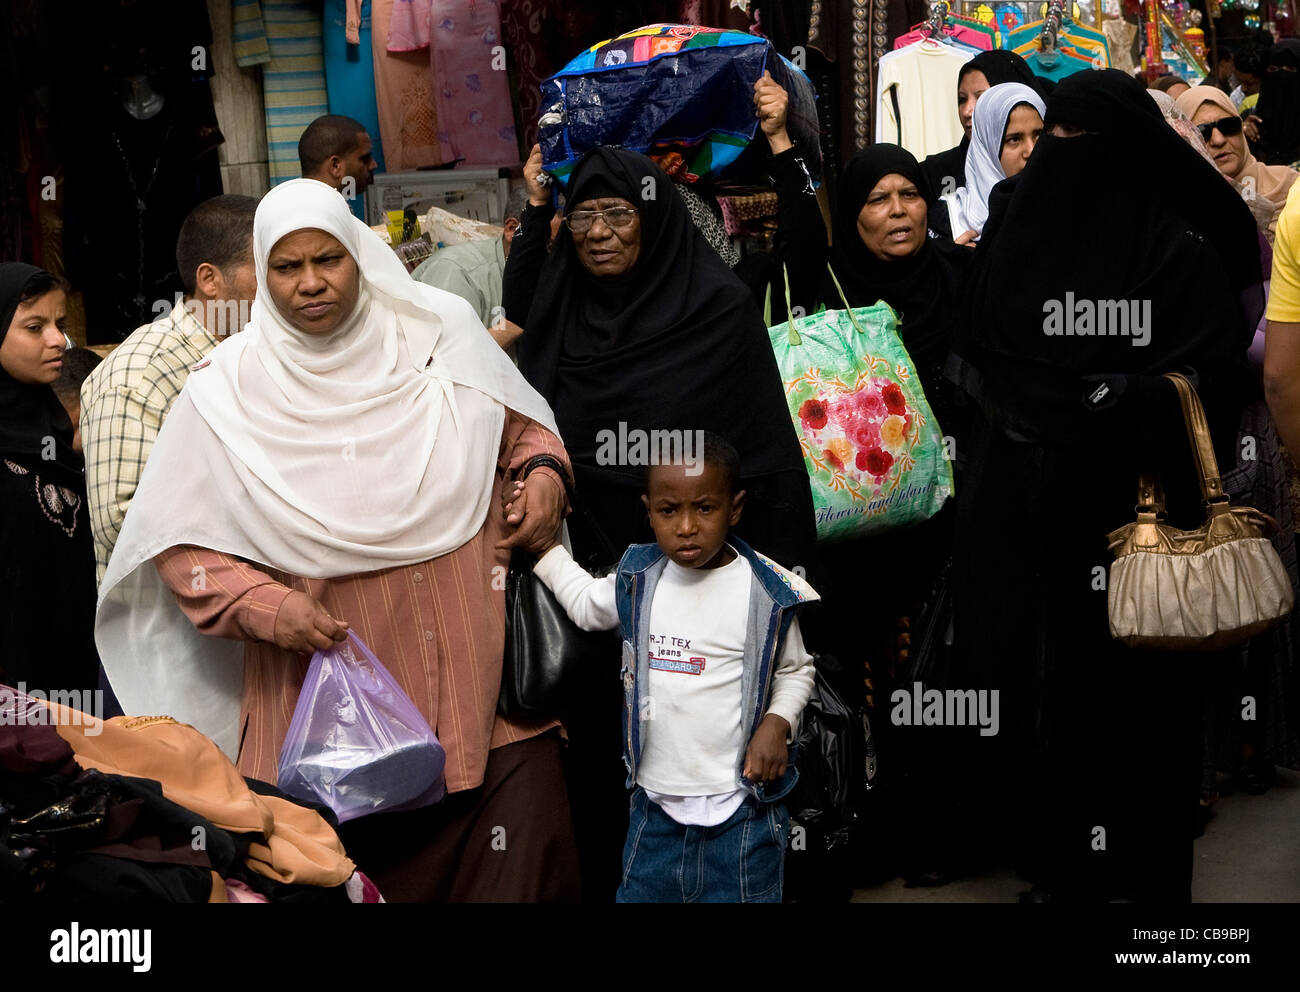 Occupato vivace bazar del Cairo. Foto Stock